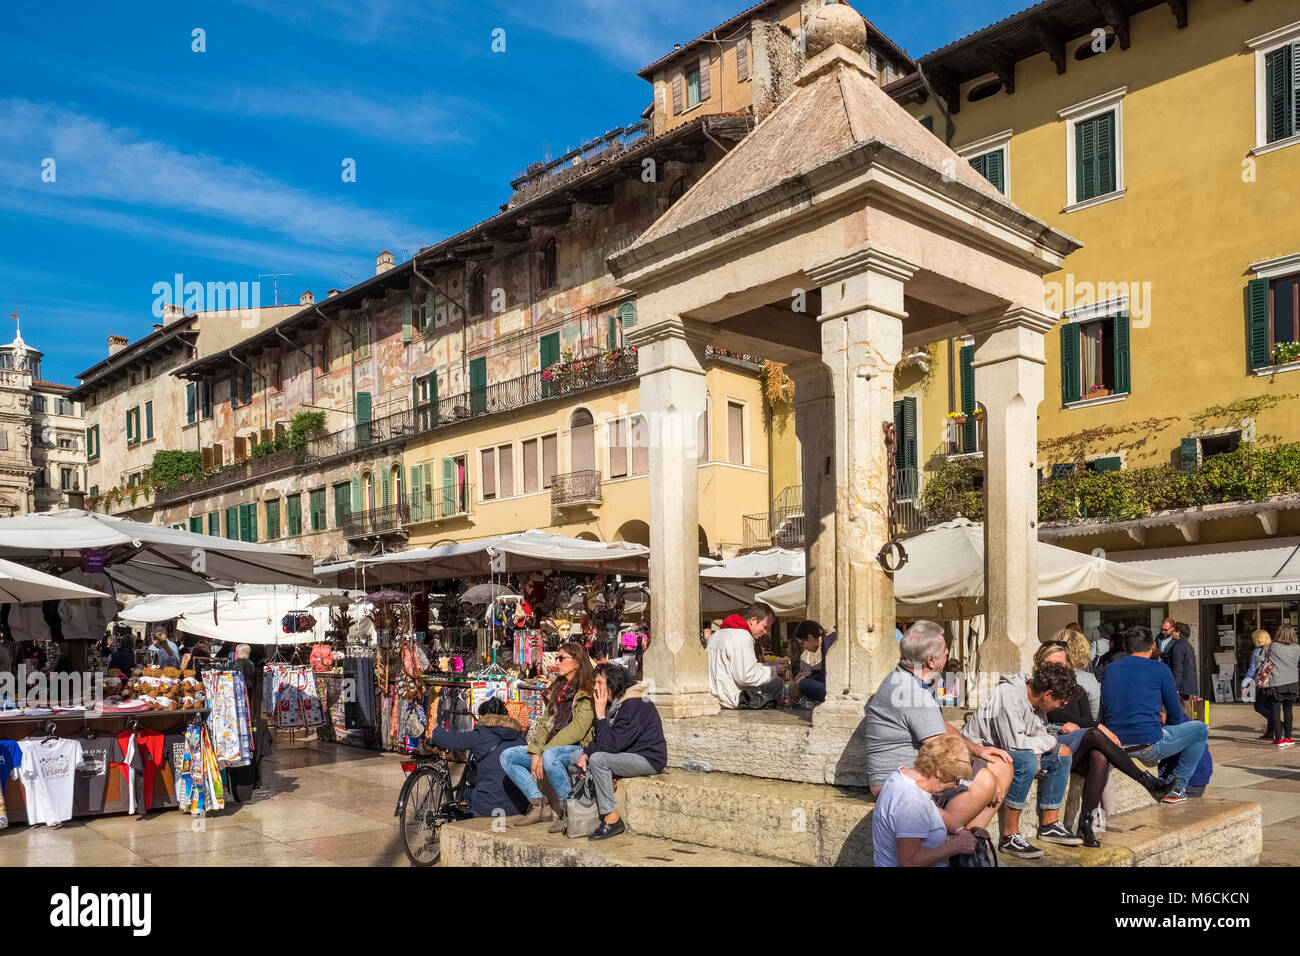 Street market at Piazza delle Erbe, Verona, Italy Stock Photo